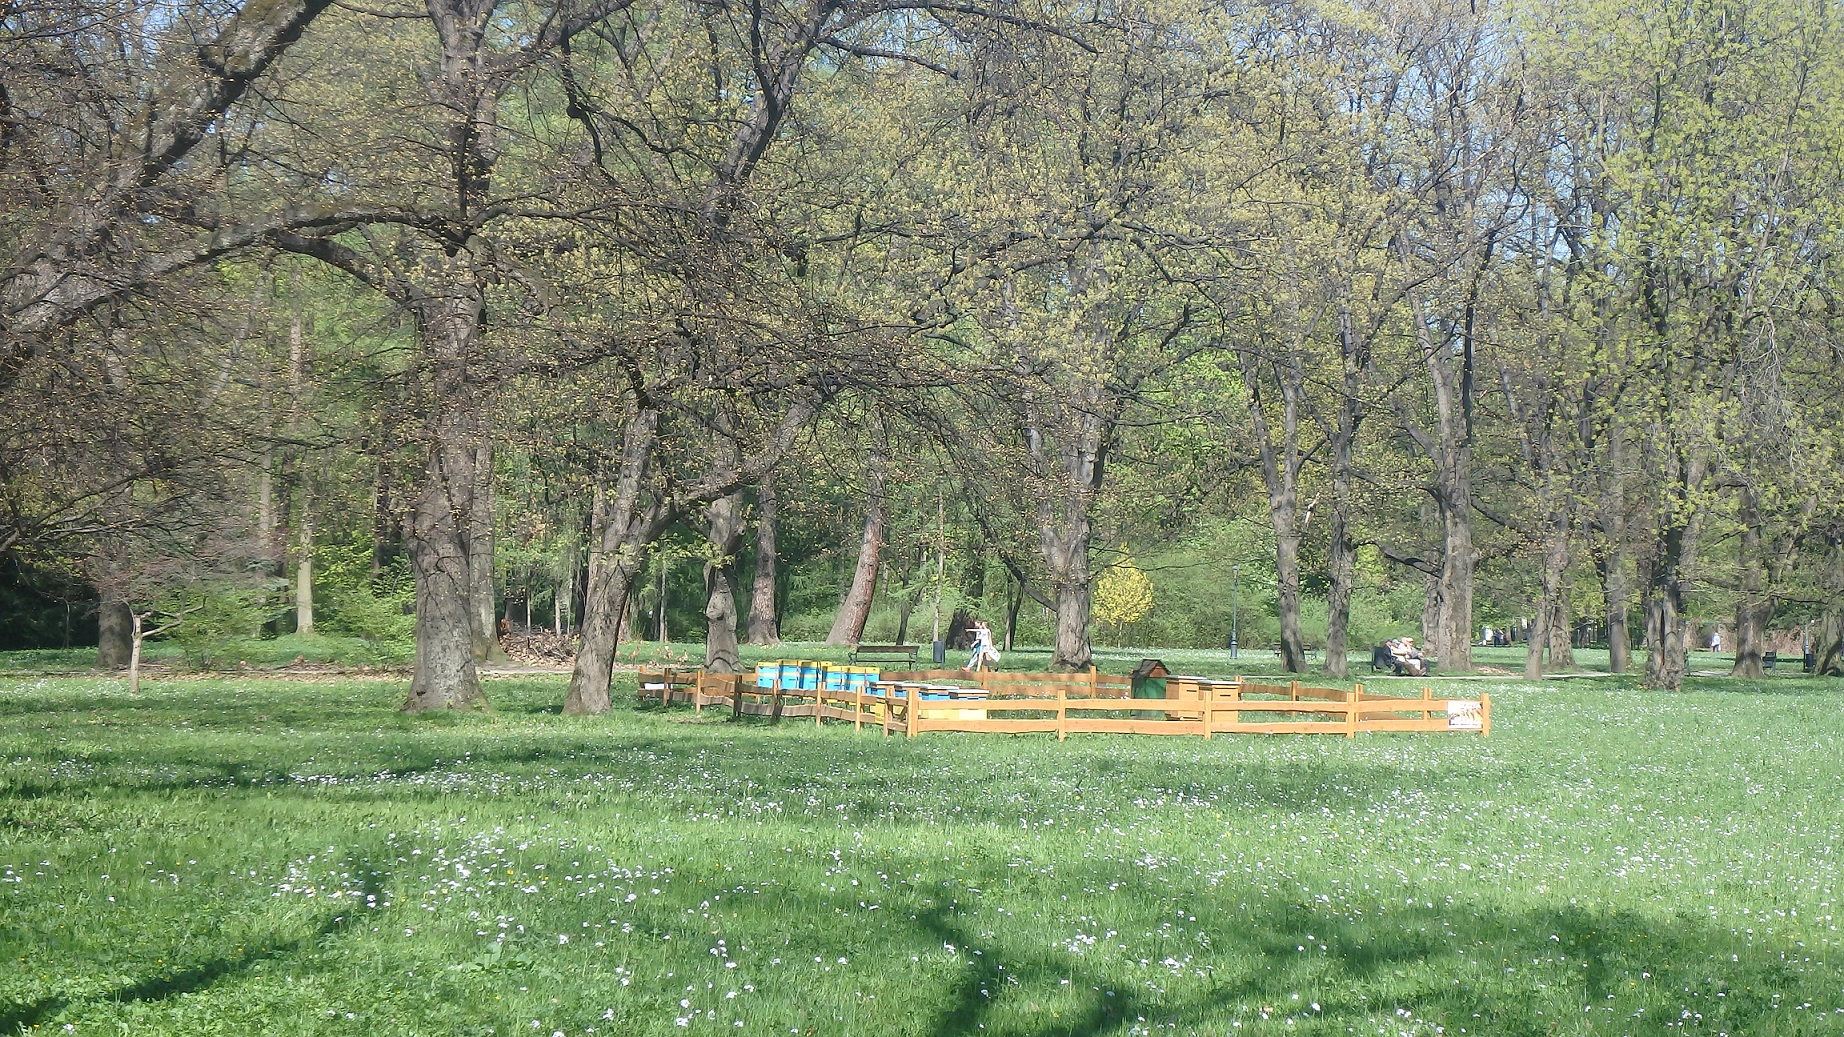 Park Zamkowy